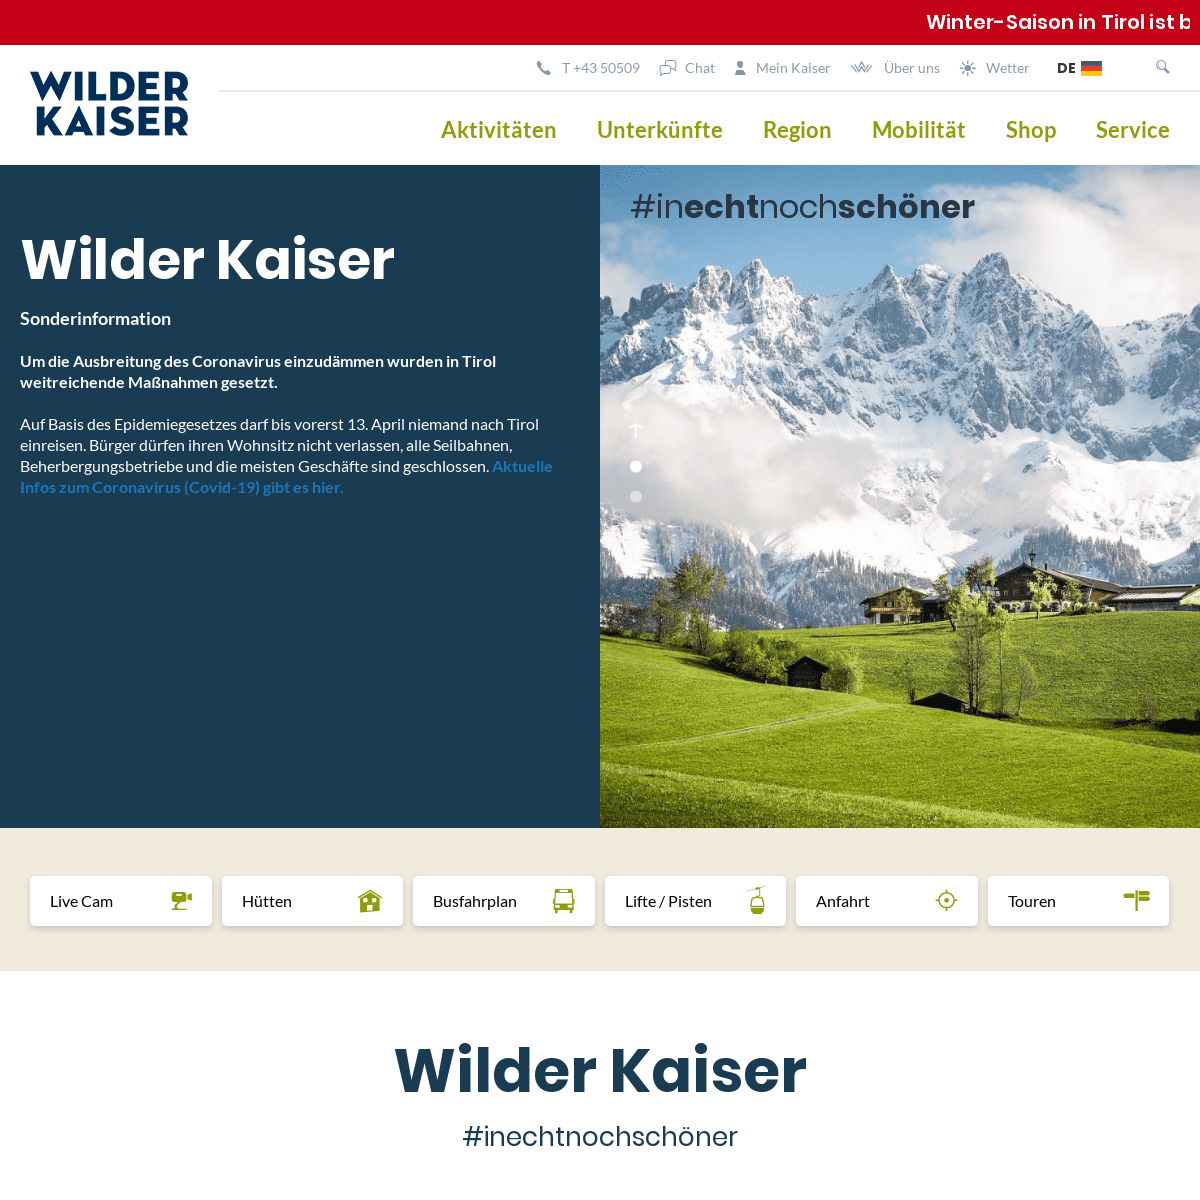 A complete backup of wilderkaiser.info